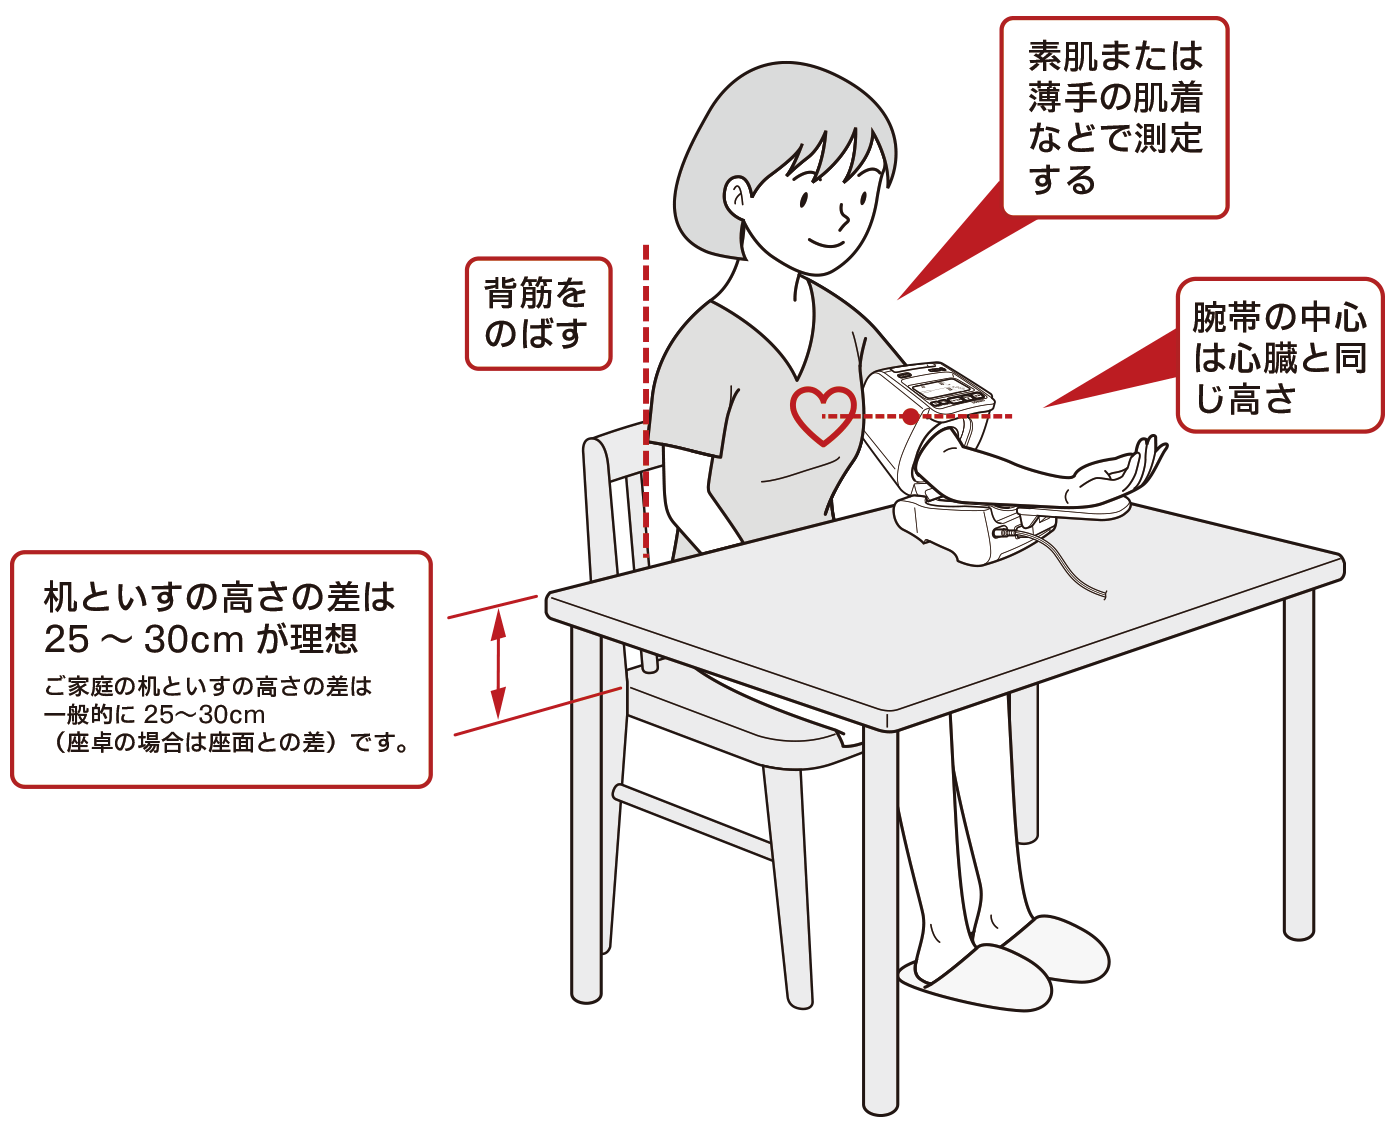 血圧 の 測定 方法